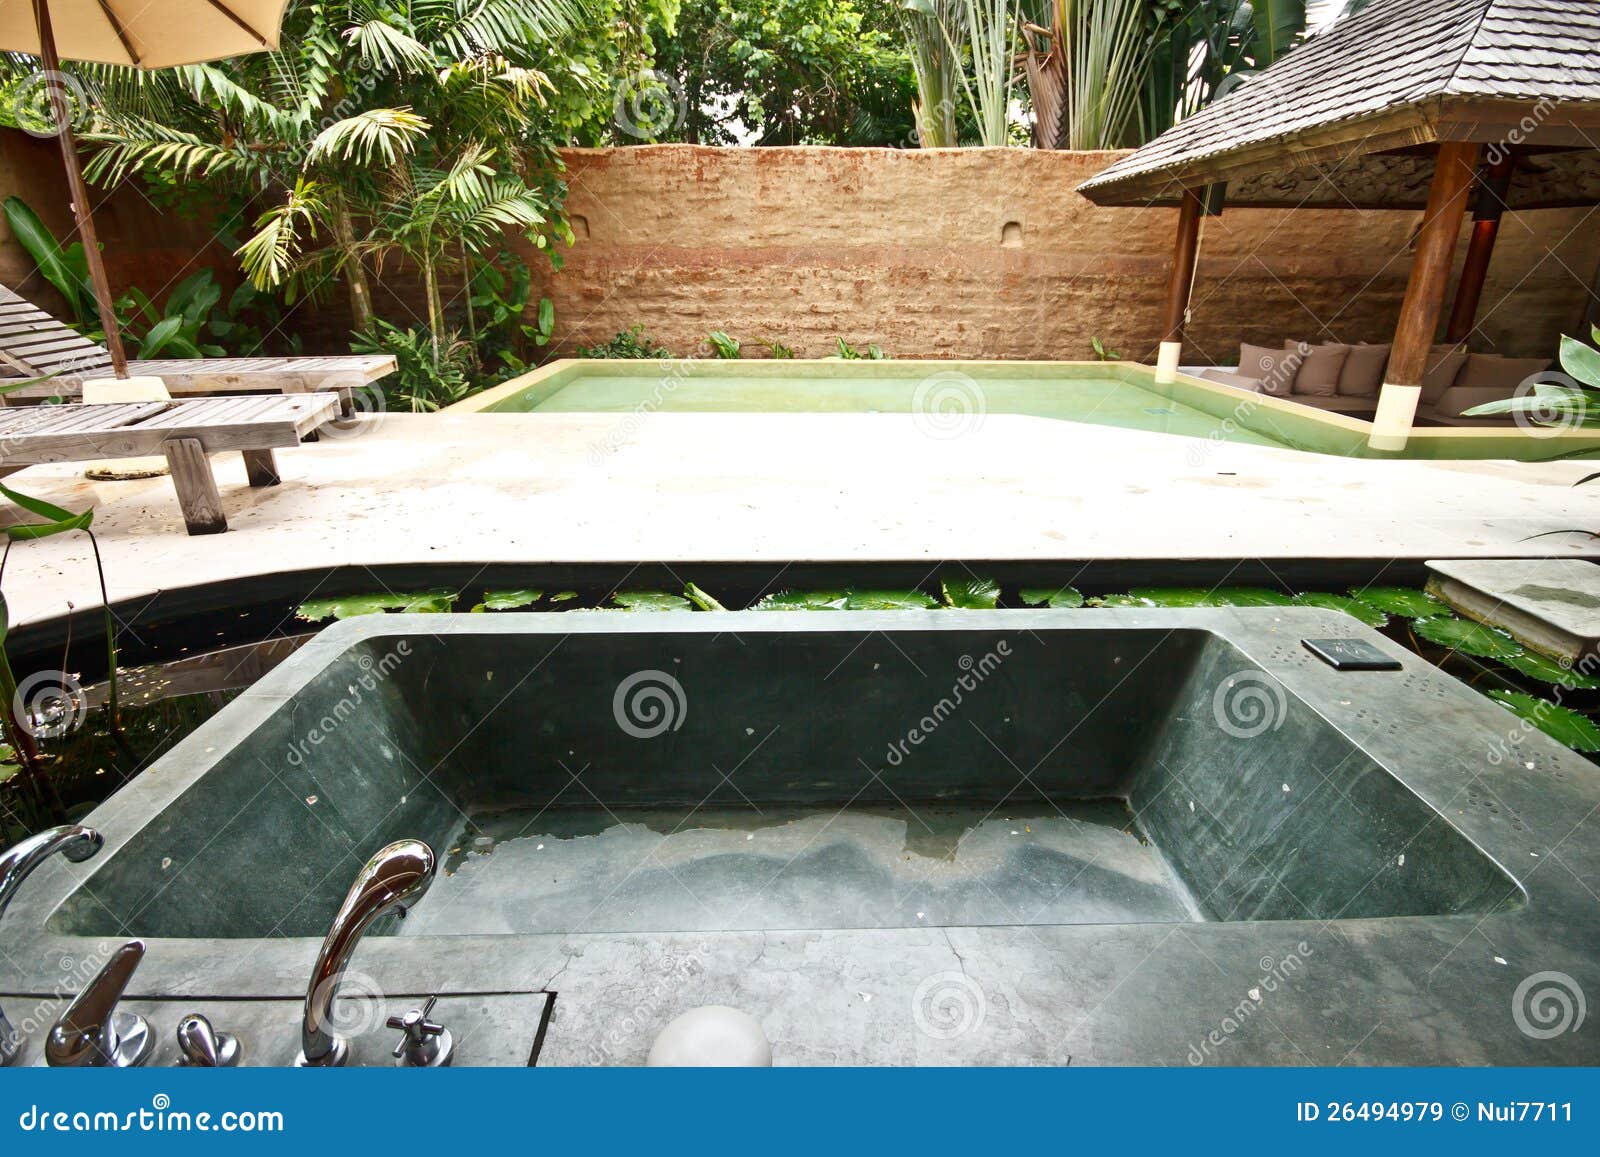 Outdoor Jacuzzi Bathtub In Garden 4 Stock Image Image Of